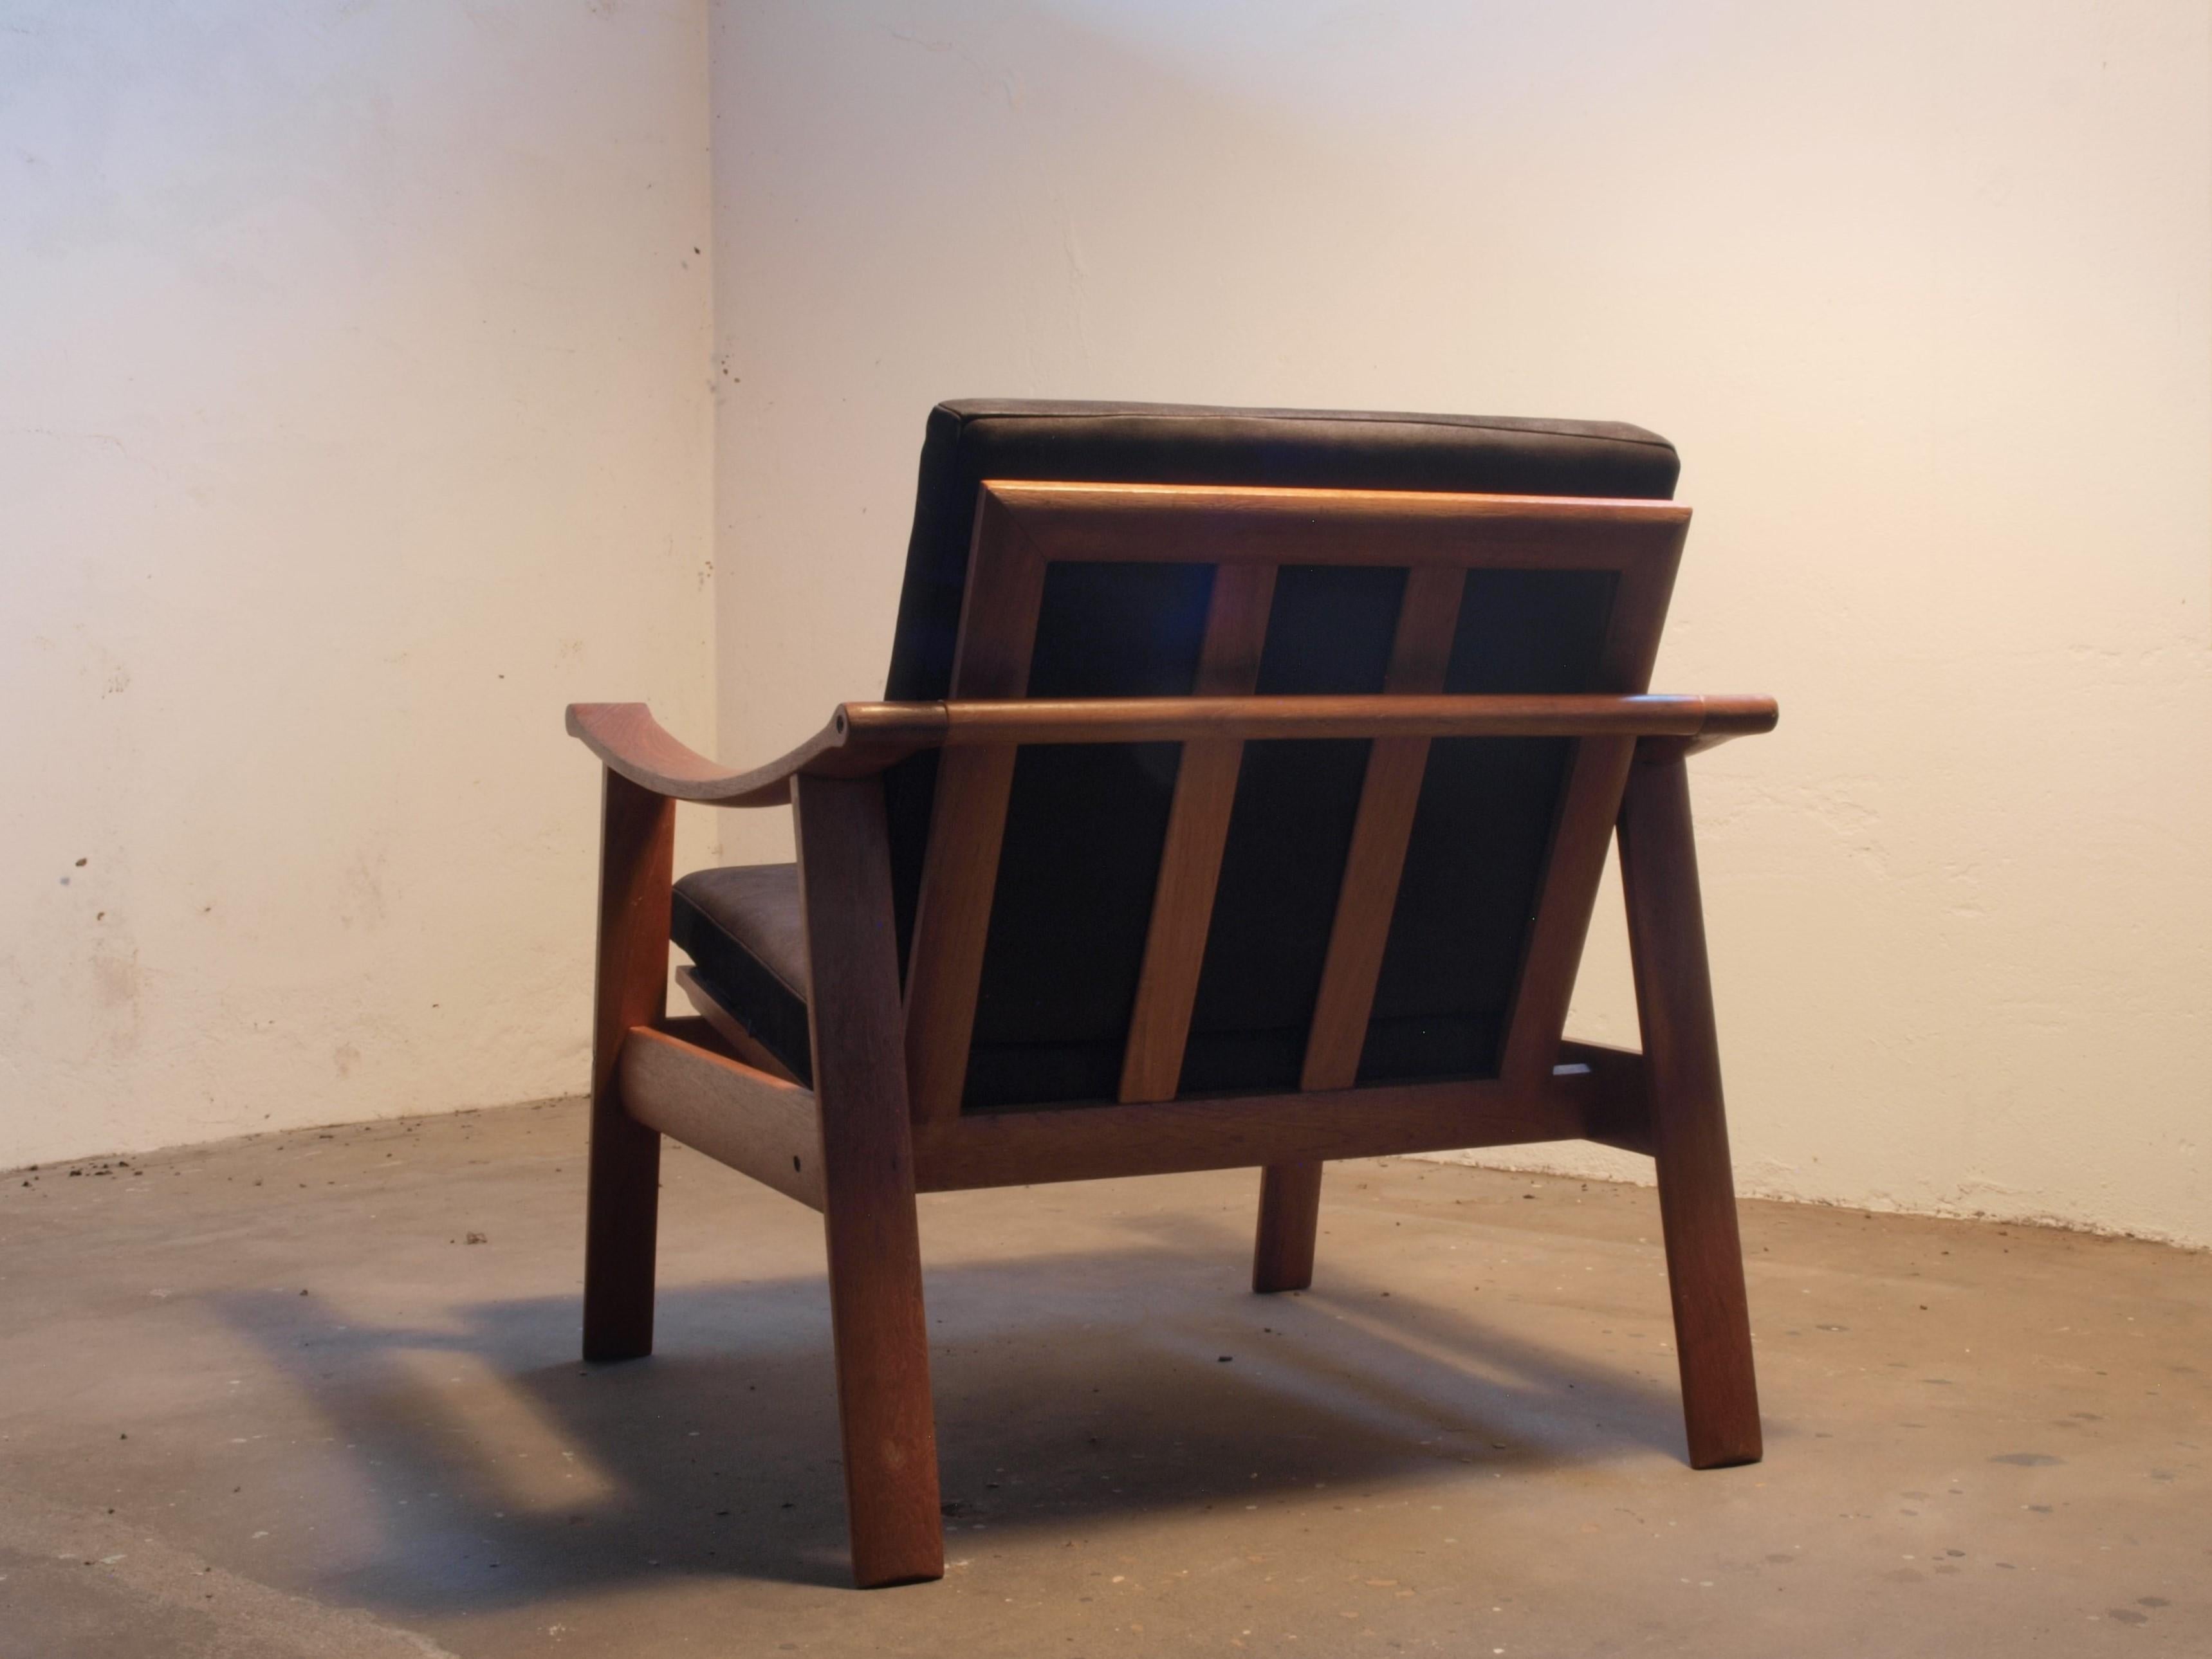 Danish Spade Chairs in Teak in the style of Finn Juhl, 1960s For Sale 14